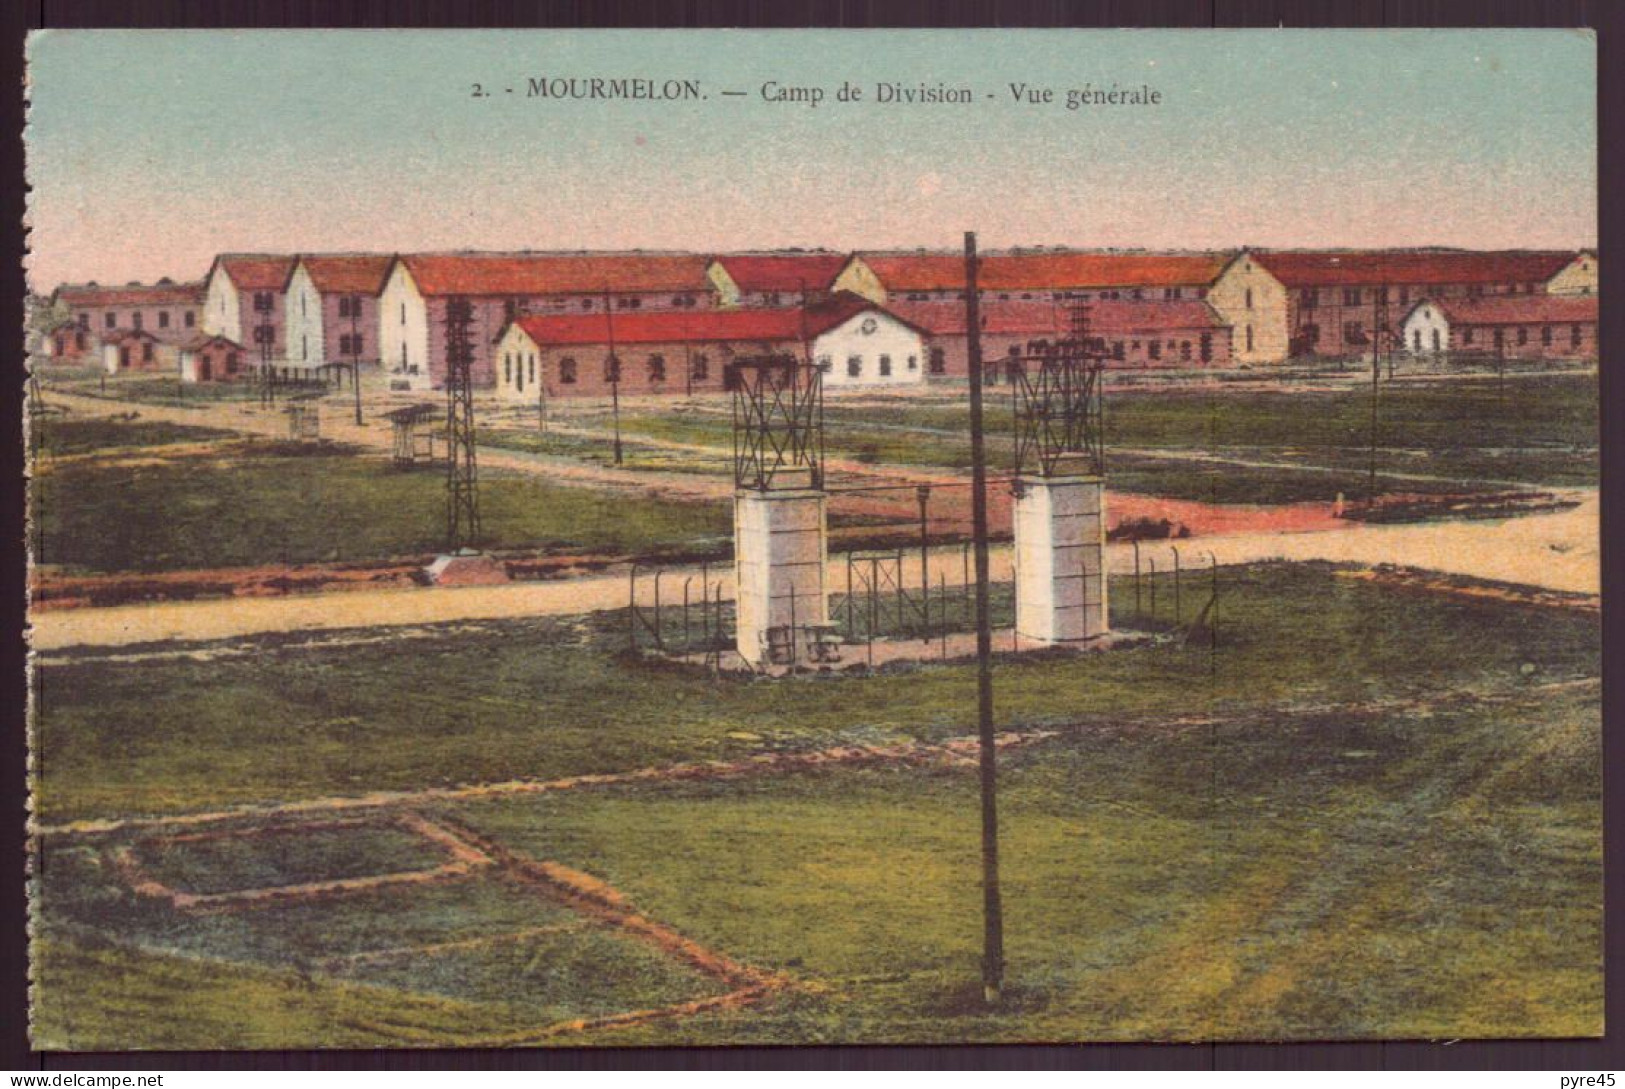 MOURMELON CAMP DE DIVISION VUE GENERALE - Kasernen